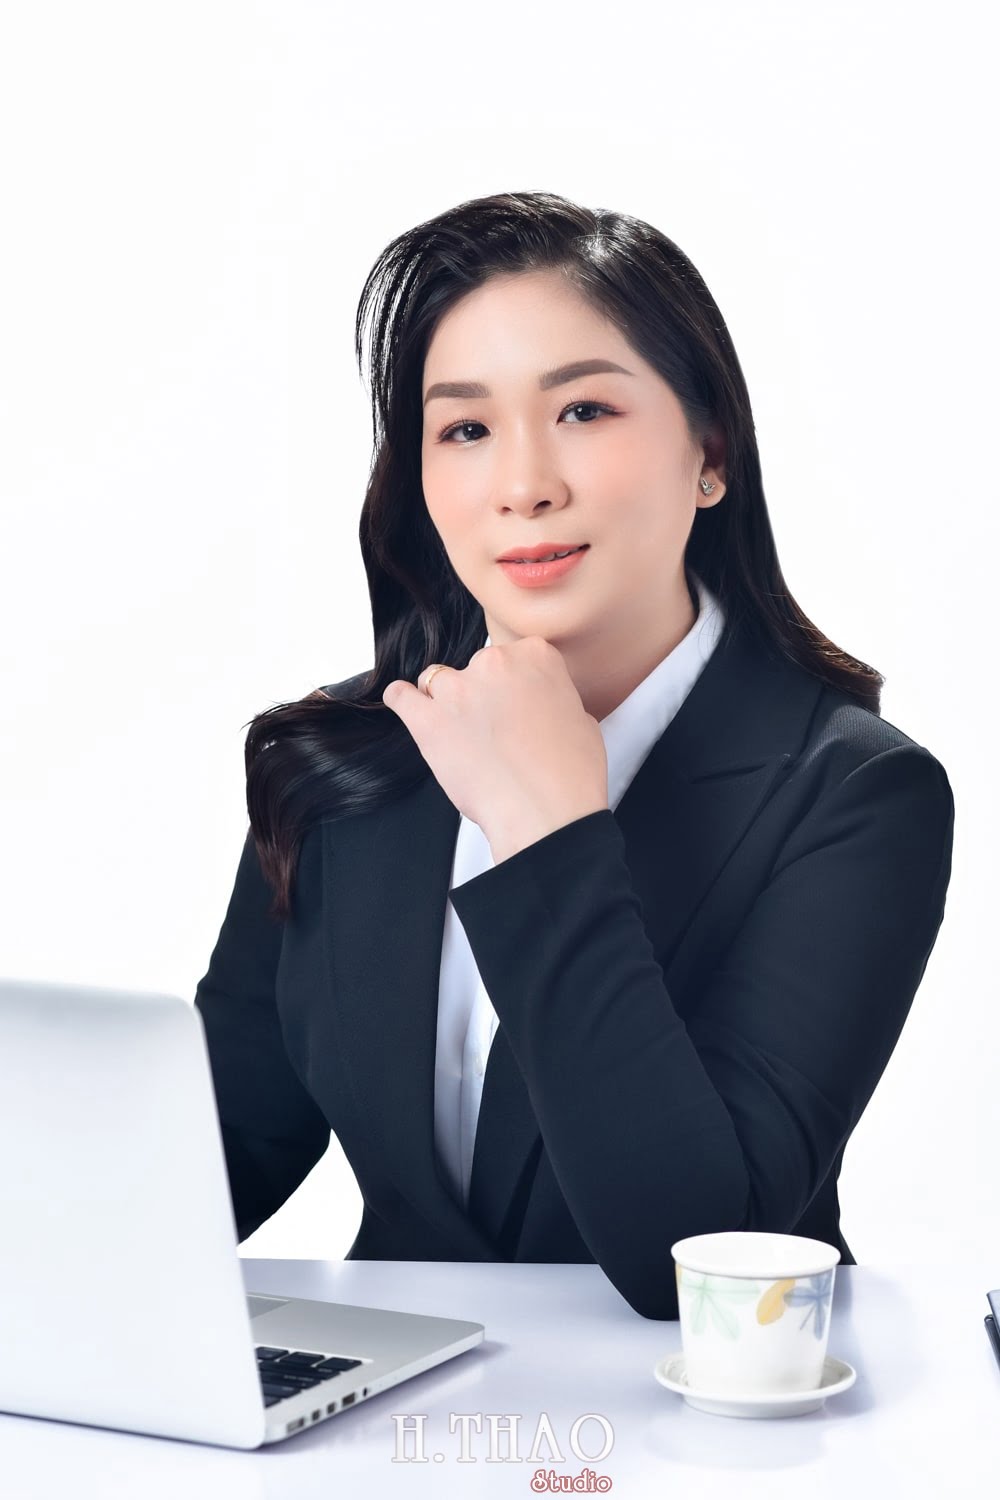 Anh doanh nhan nu 31 min - Cách chụp ảnh với áo vest nữ đẹp, trẻ trung, chuyên nghiệp- HThao Studio